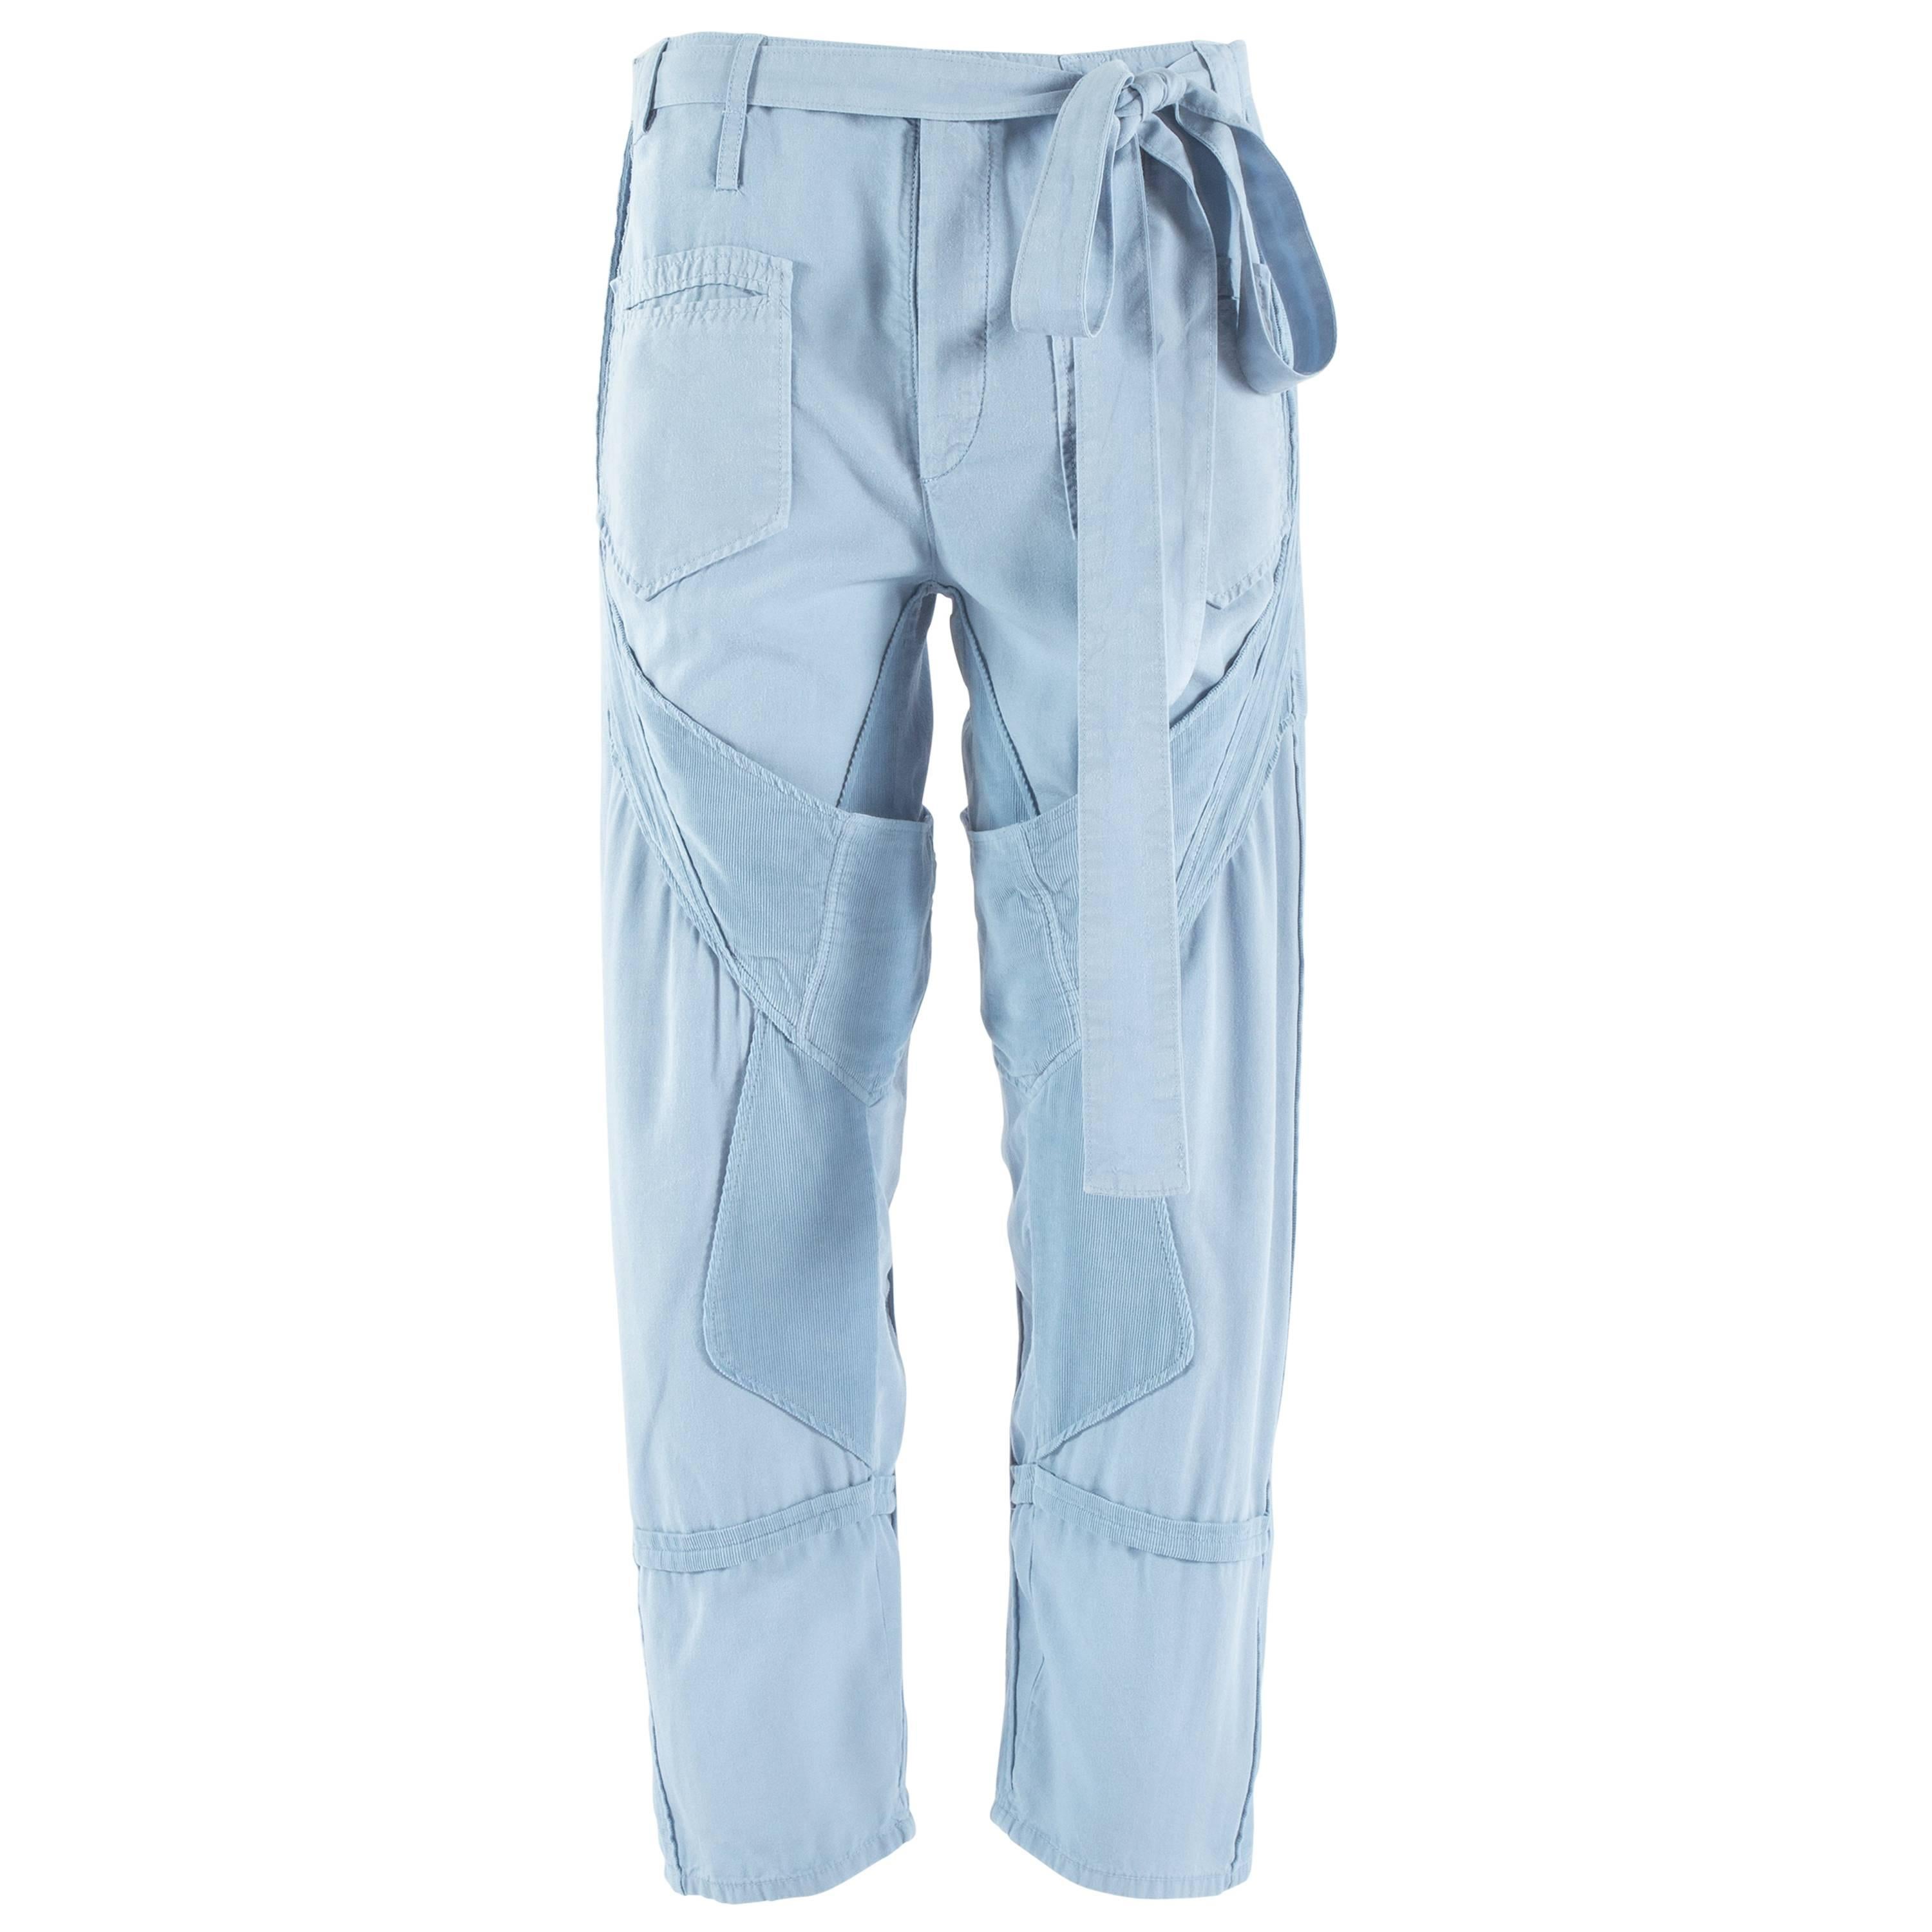 Balenciaga Nicolas blue and corduroy cargo pants, ss 2002 at